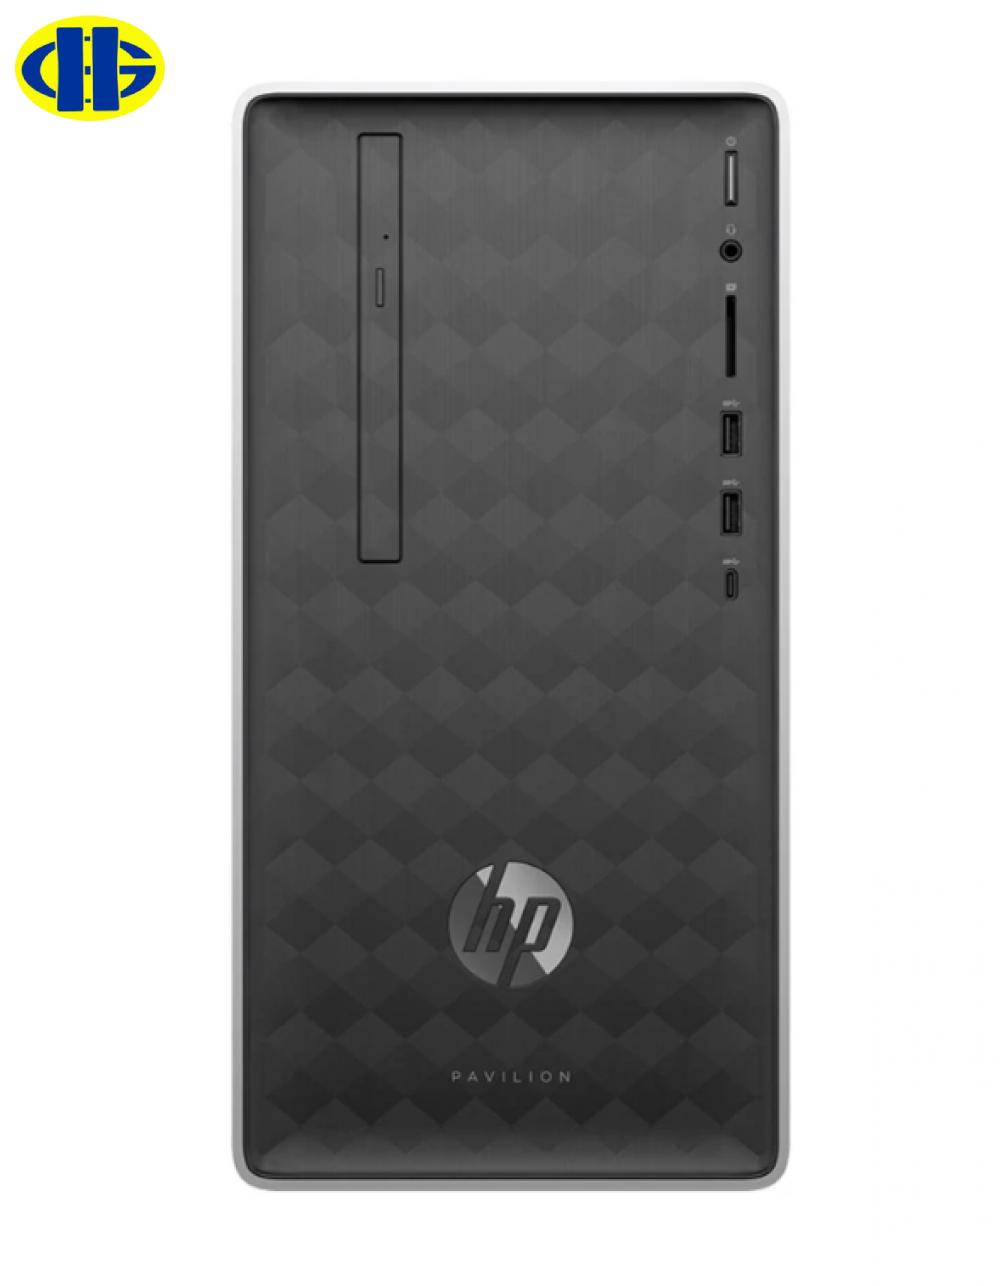 Máy tính để bàn - PC HP Pavilion 590-p0033d 4LY11AA (i3-8100/4GB/1TB HDD/UHD 630/Win10)